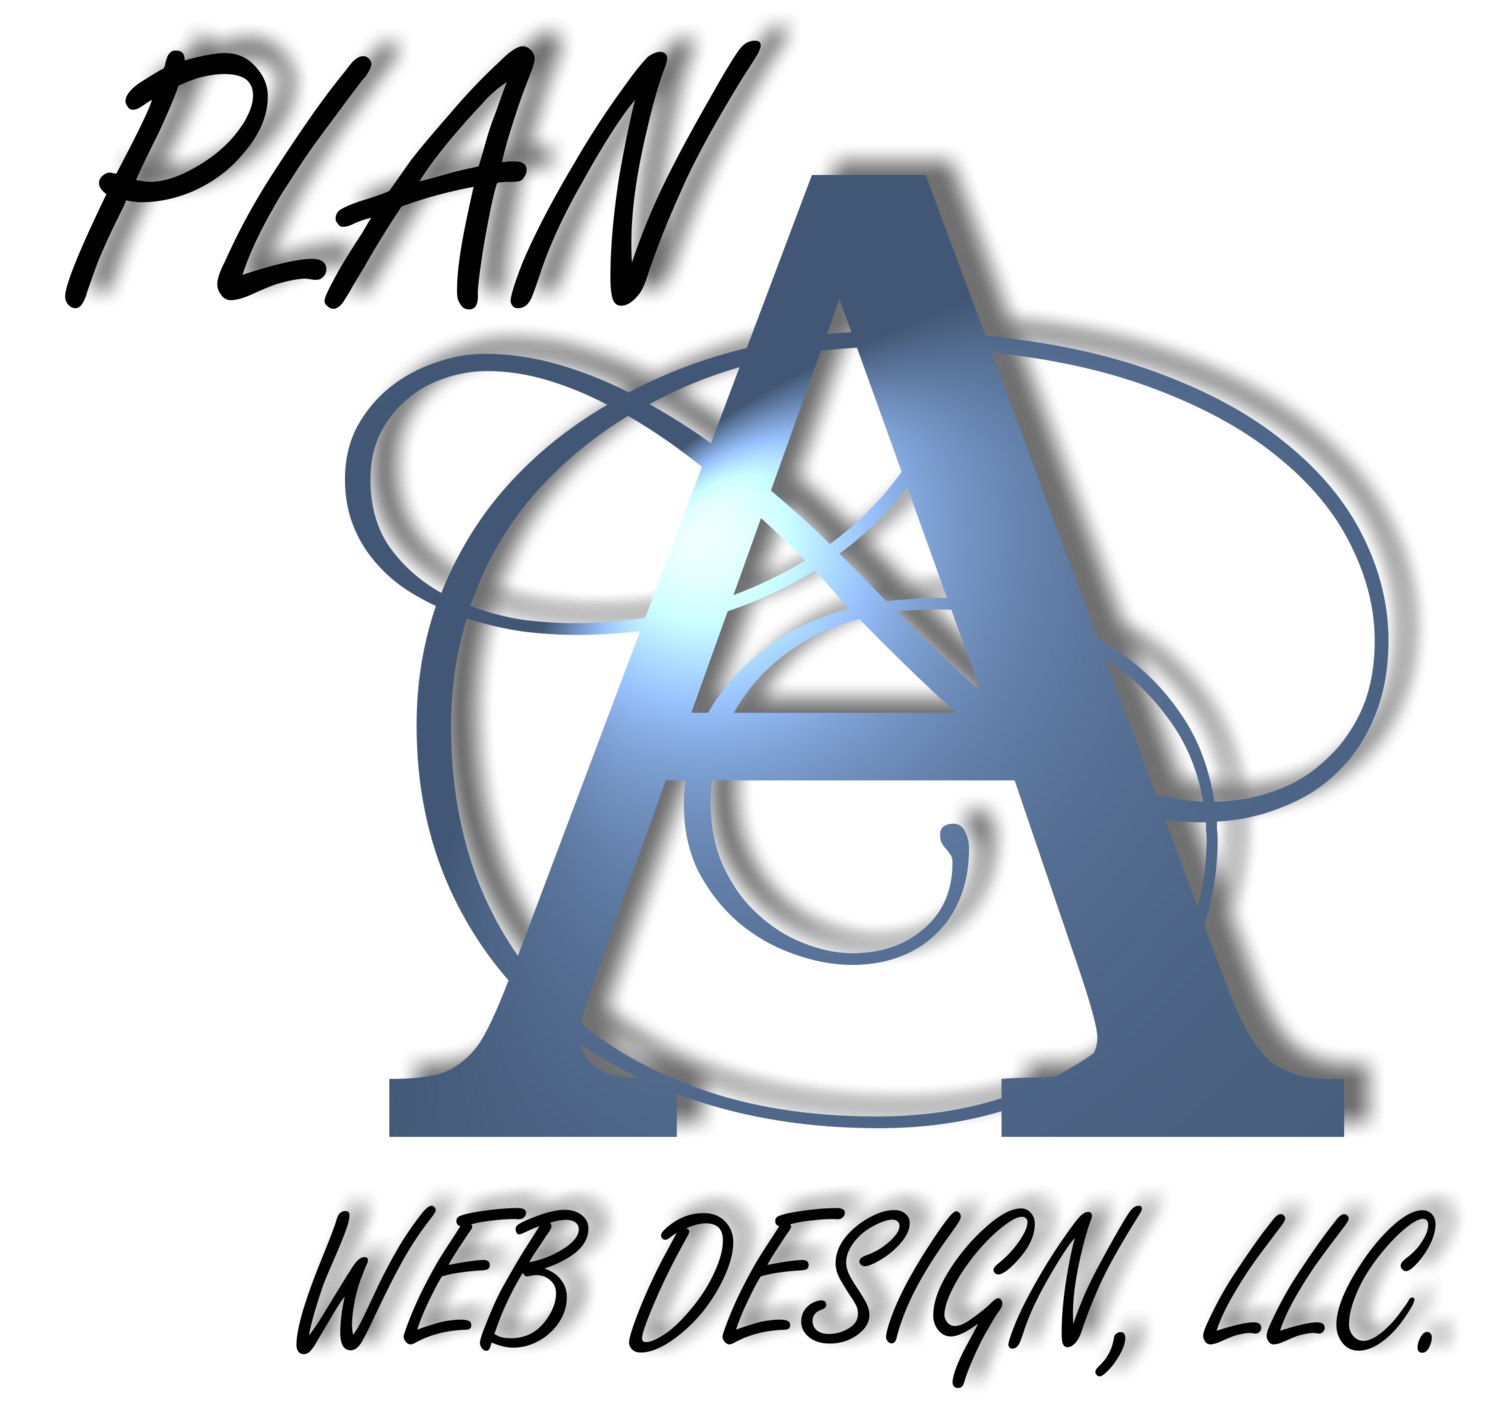 Plan A Website Design, LLC